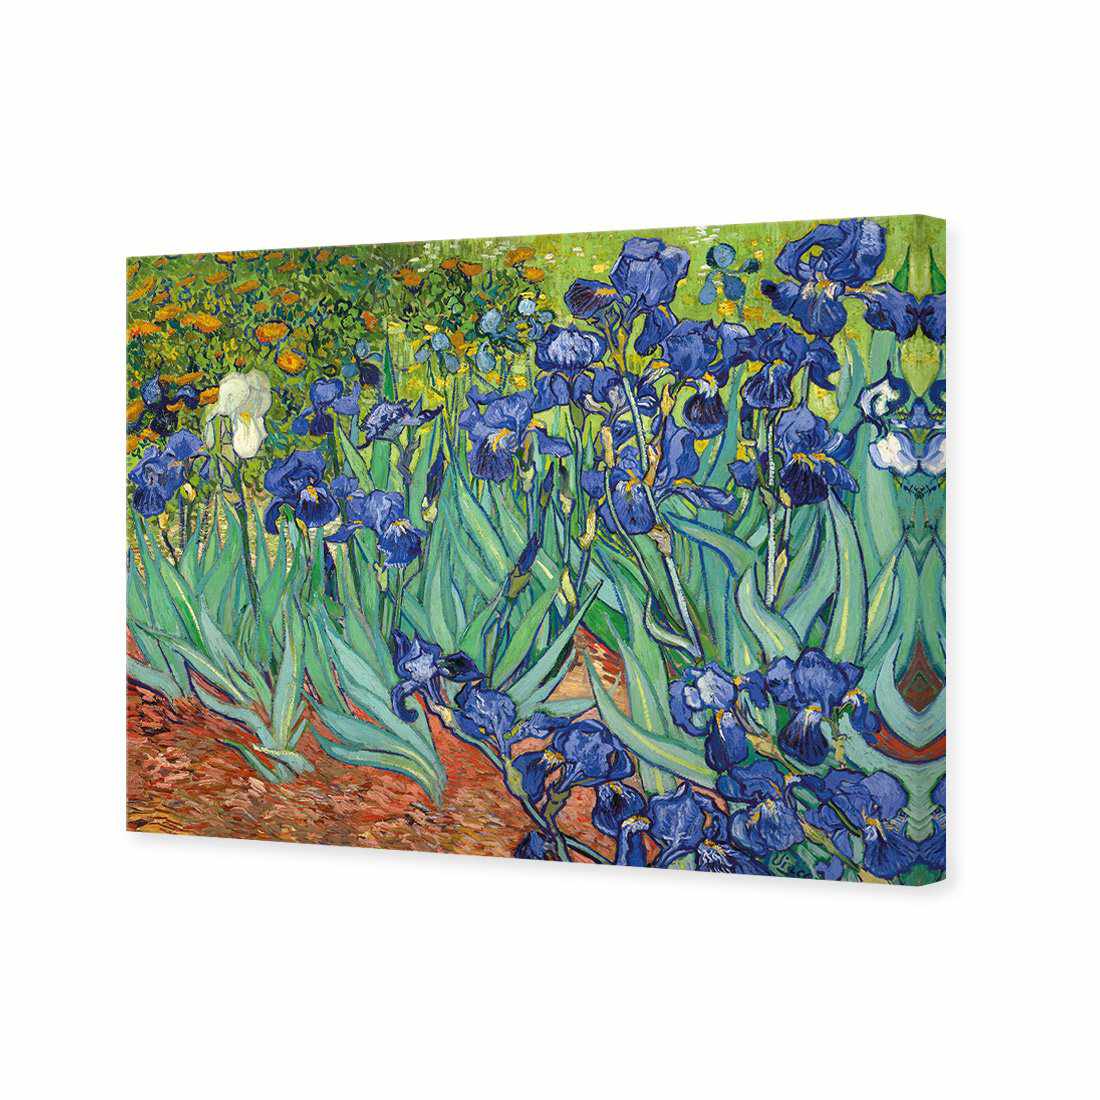 Irises 2 - Van Gogh Canvas Art-Canvas-Wall Art Designs-45x30cm-Canvas - No Frame-Wall Art Designs